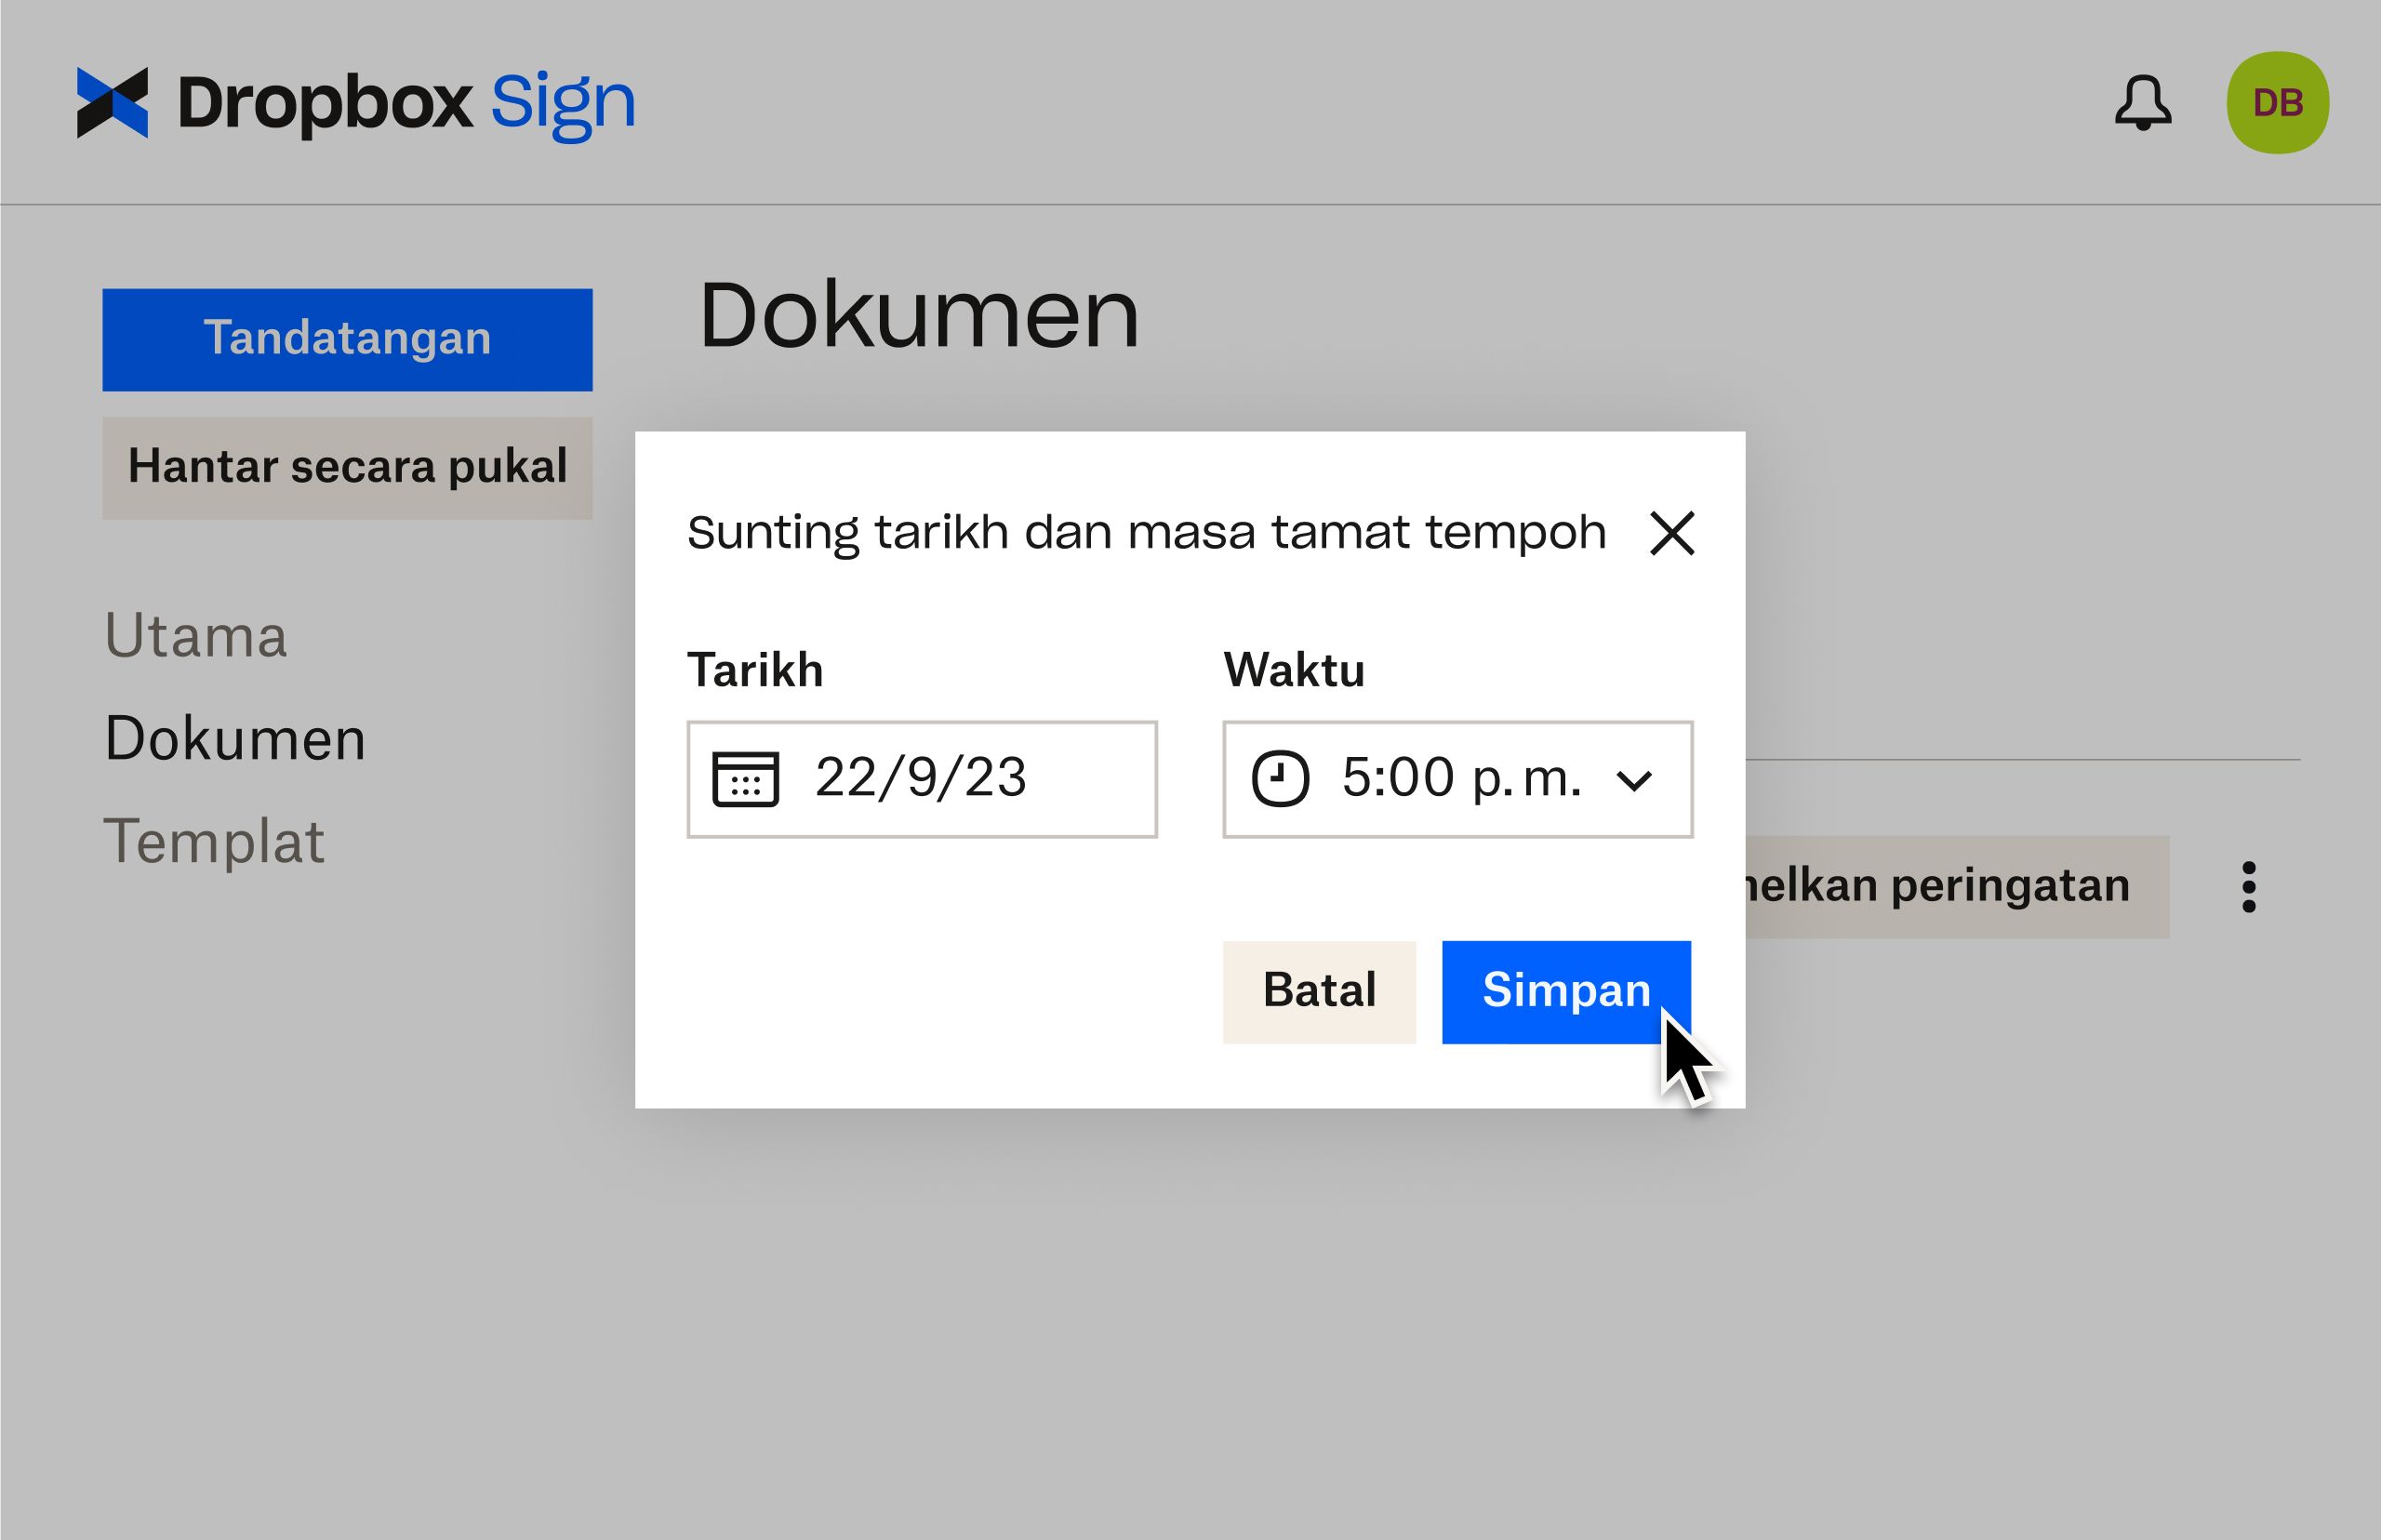 UI Dropbox Sign menunjukkan cara menyunting tarikh luput selepas menghantar dokumen untuk ditandatangan